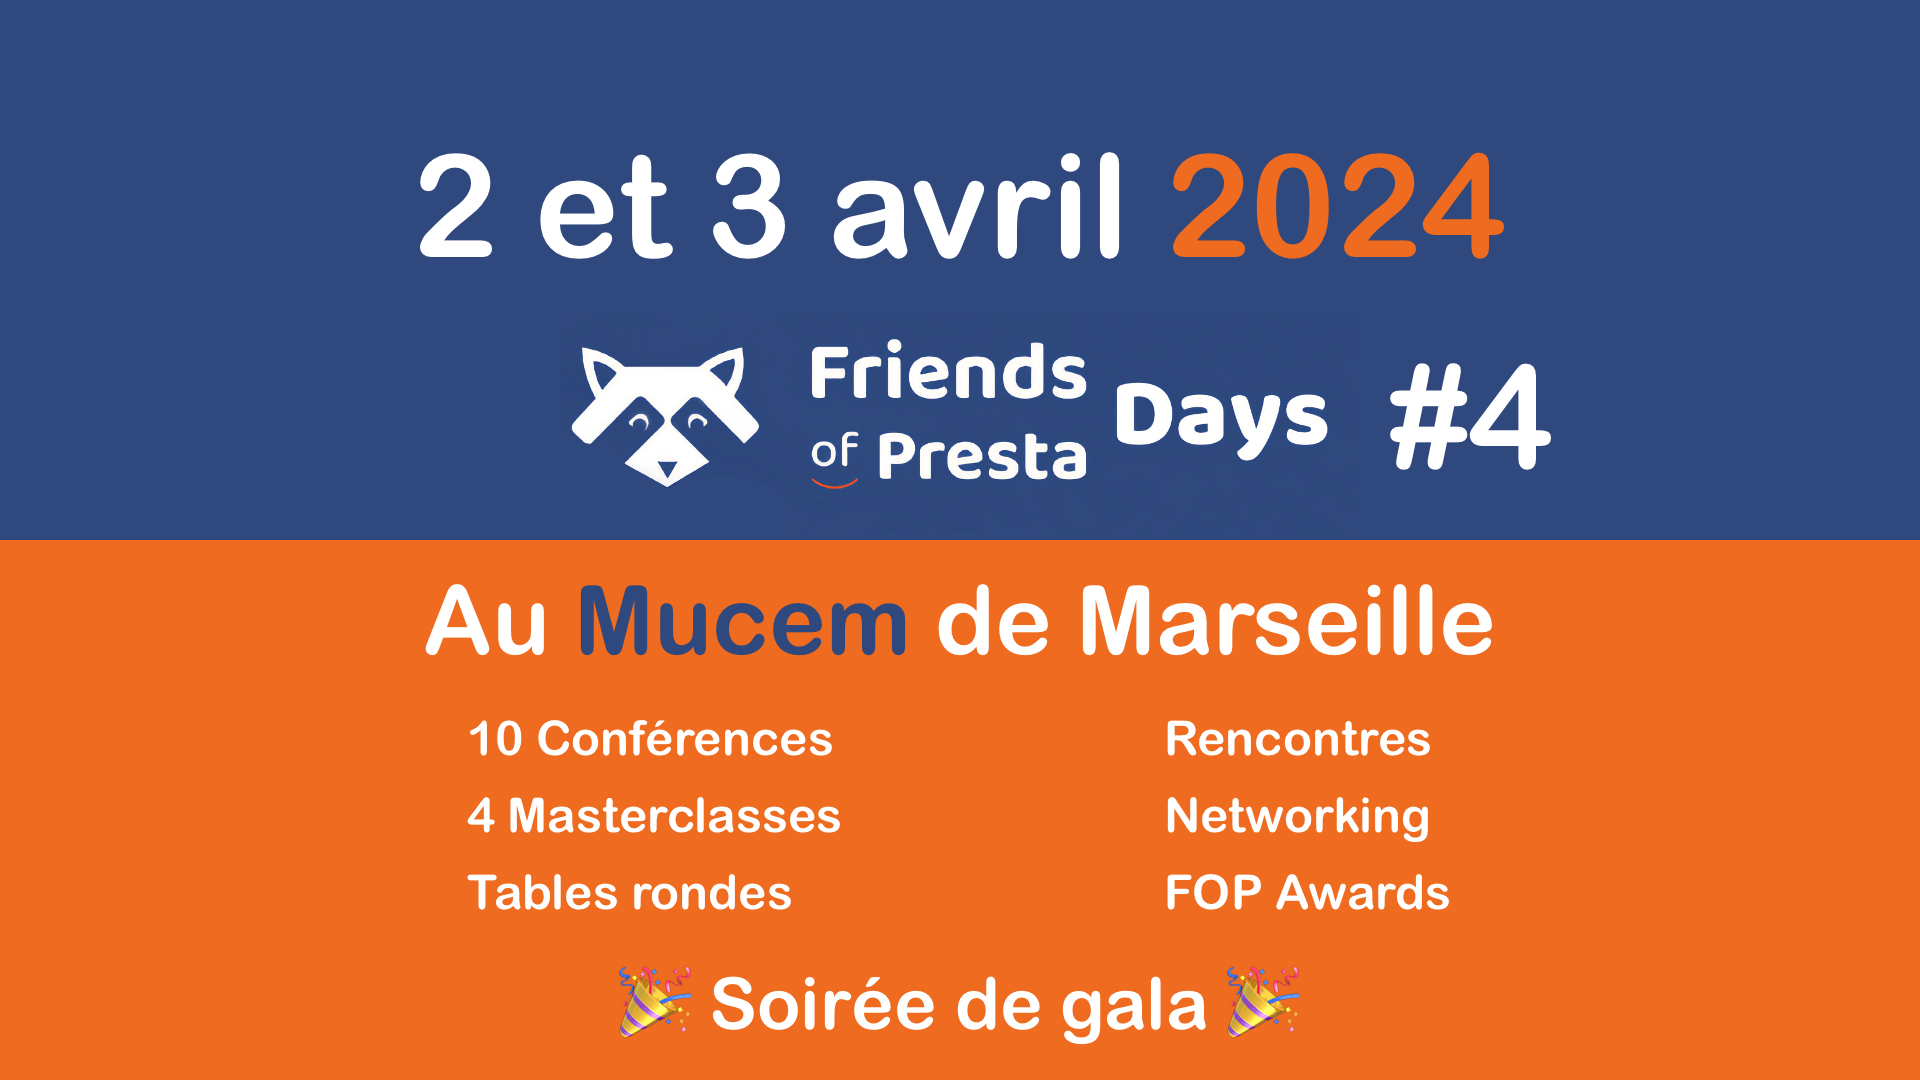 FoP Days #4 les 2 et 3 avril 2024 au Mucem de Marseille